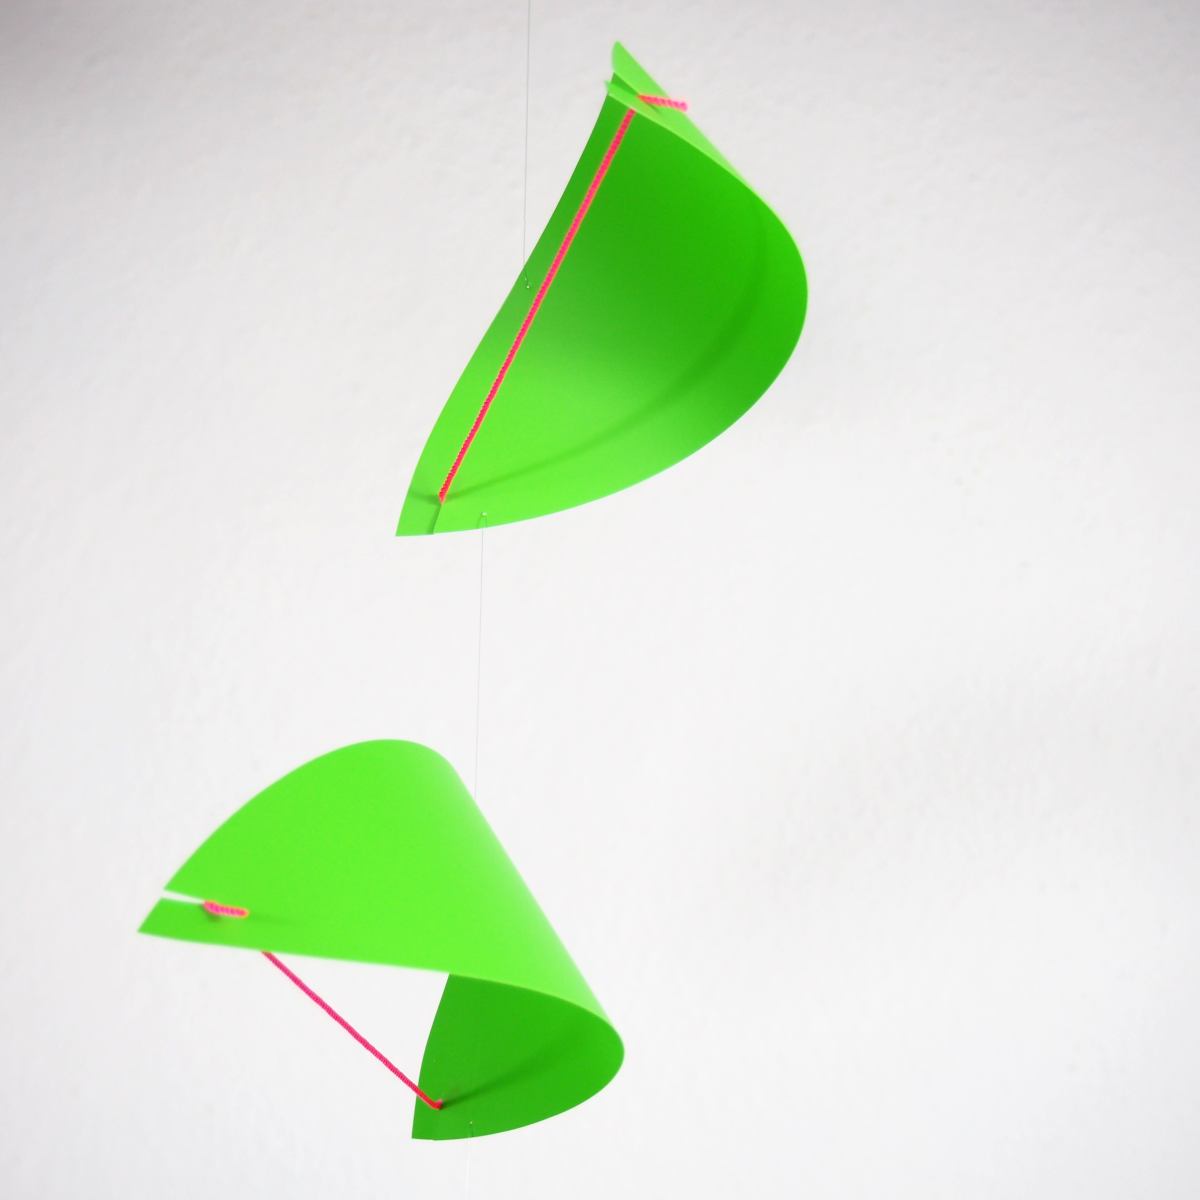 Danish Design Mobile "Kites" in Black or Green (38 x 80 cm)